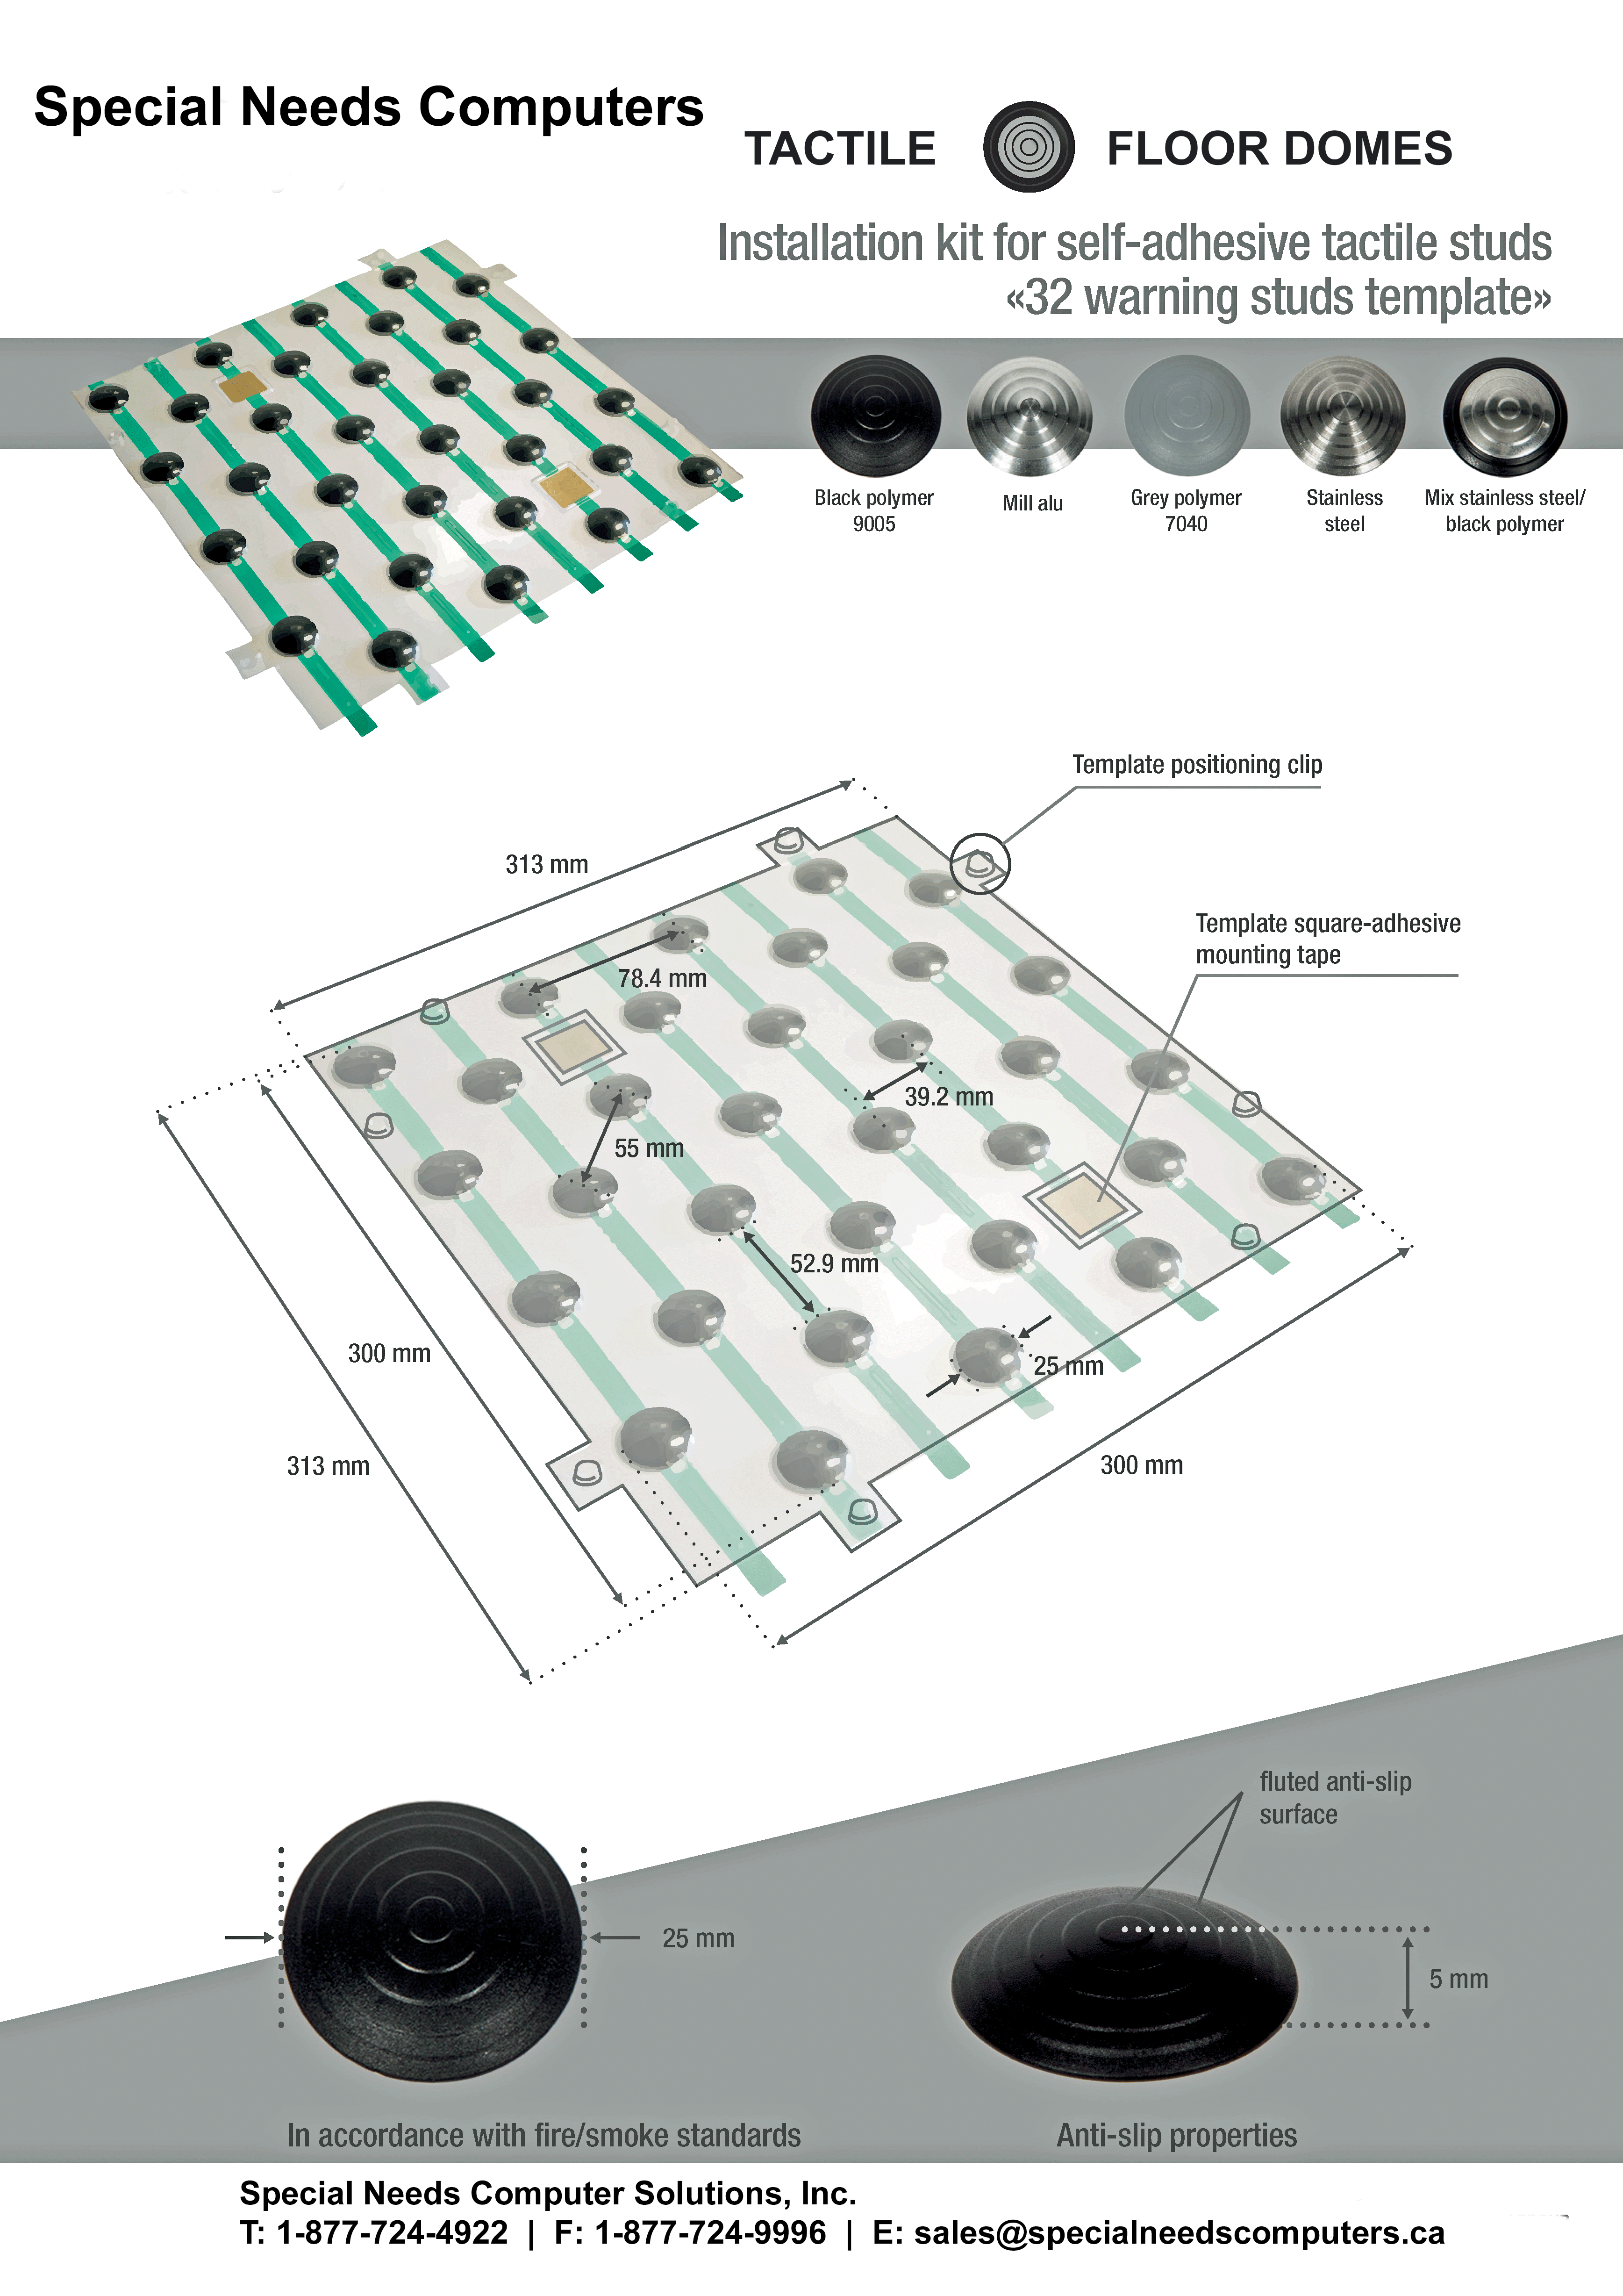 Tactile Floor Domes info